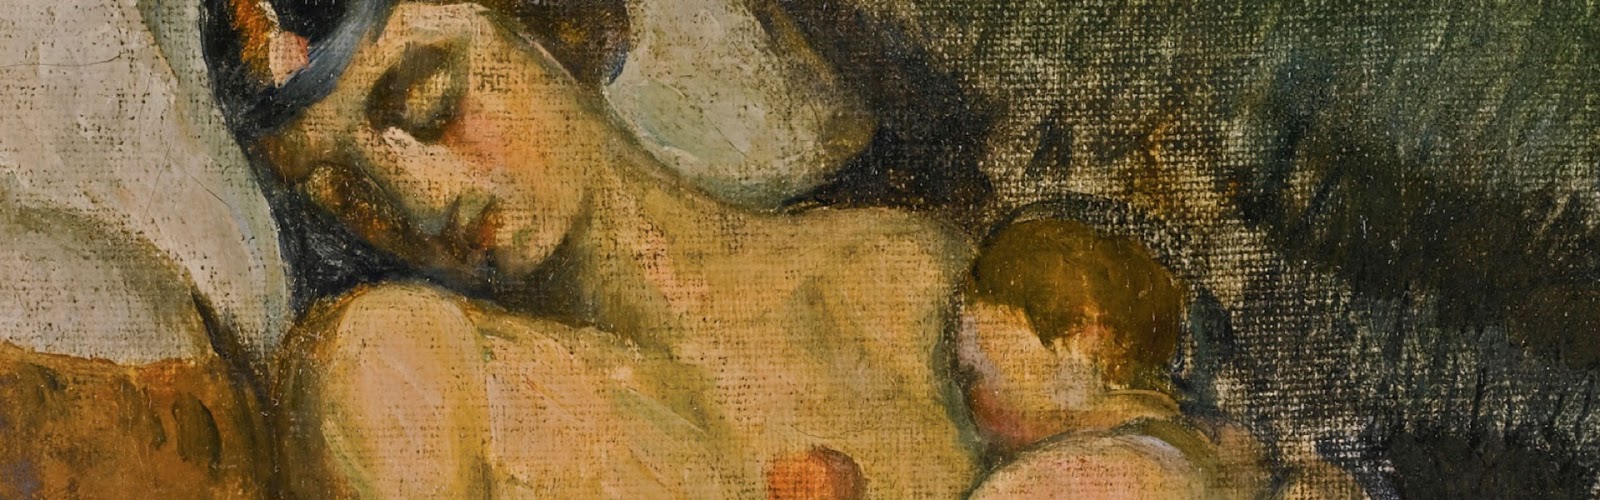 Paul+Cezanne-1839-1906 (2).jpeg